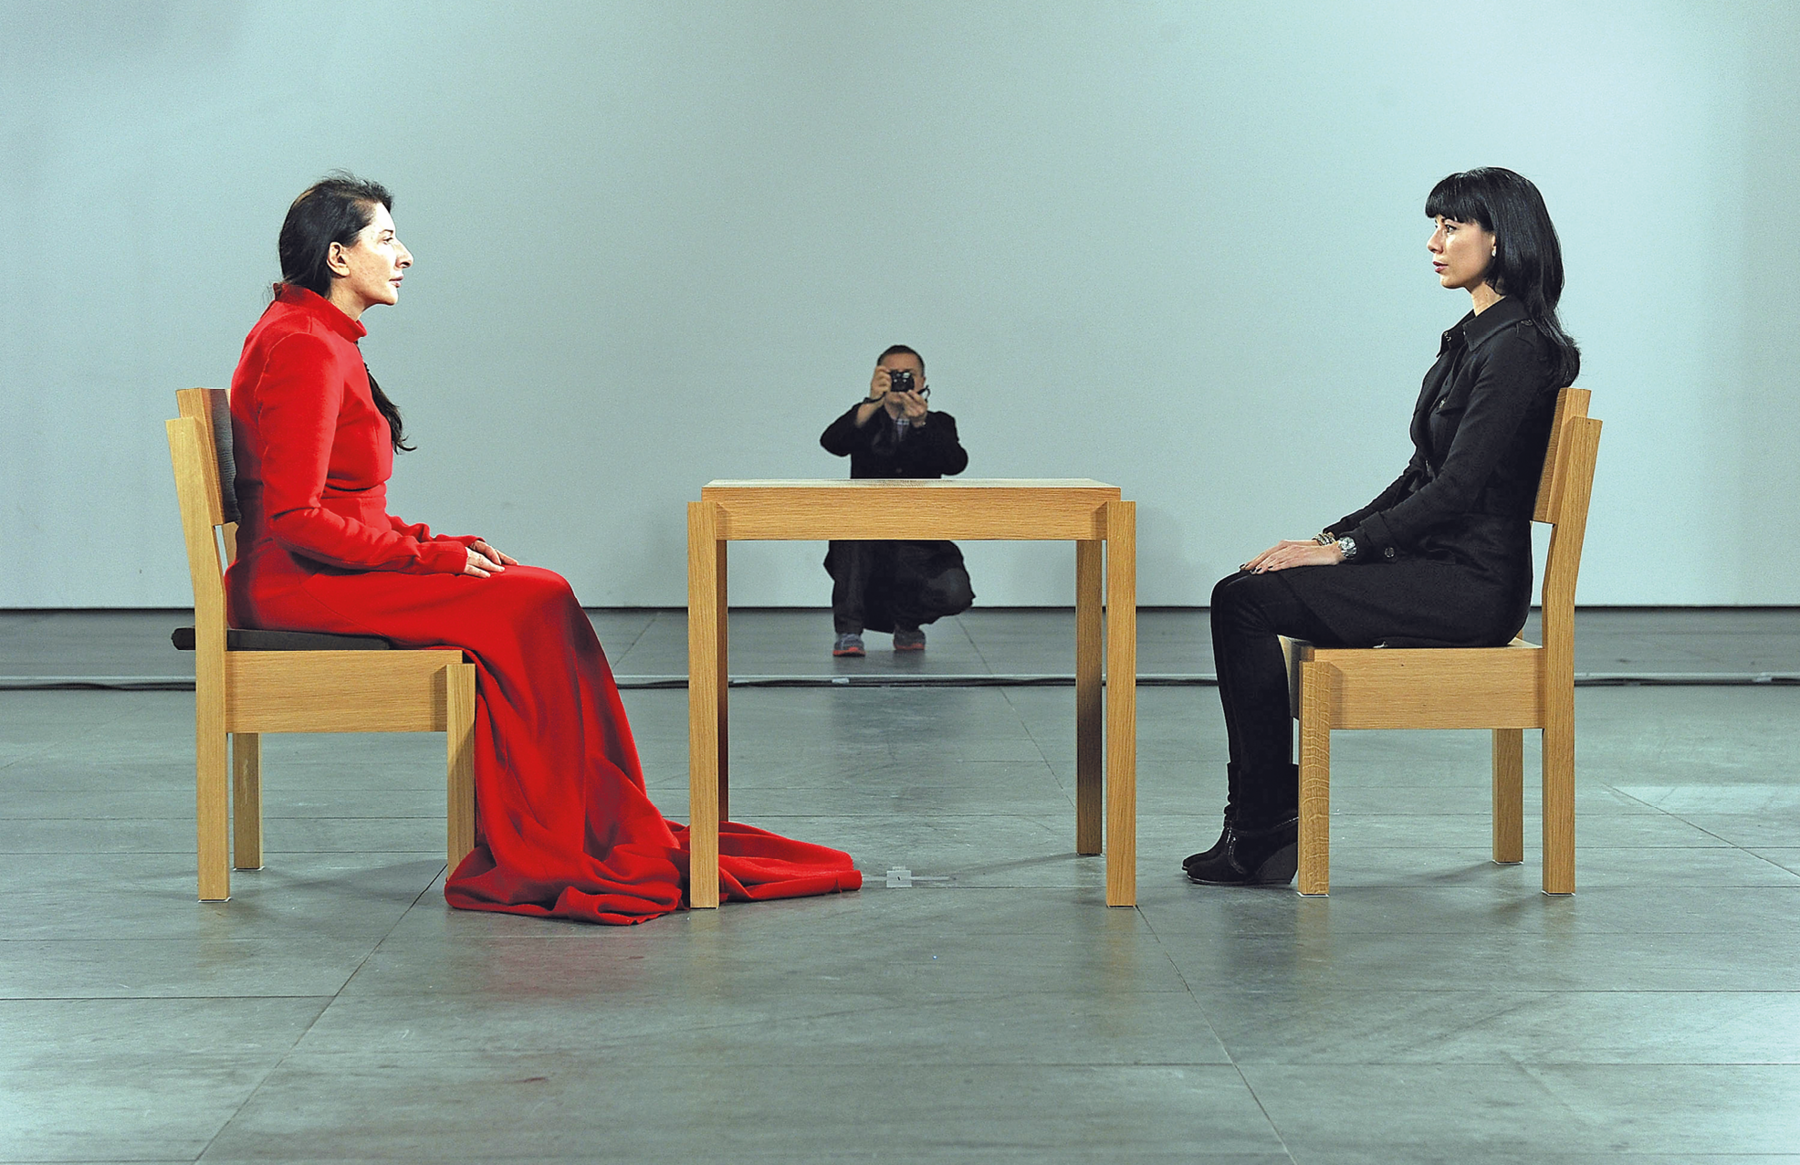 Fotografia. Em uma ampla sala, duas mulheres estão frente a frente sentadas diante de uma mesa. Os móveis são de madeira marrom. A mulher à esquerda veste um longo vestido vermelho; à da direita, usa um traje formal preto. Ao fundo, diante de uma parede acinzentada, há uma pessoa agachada e fotografando as mulheres.